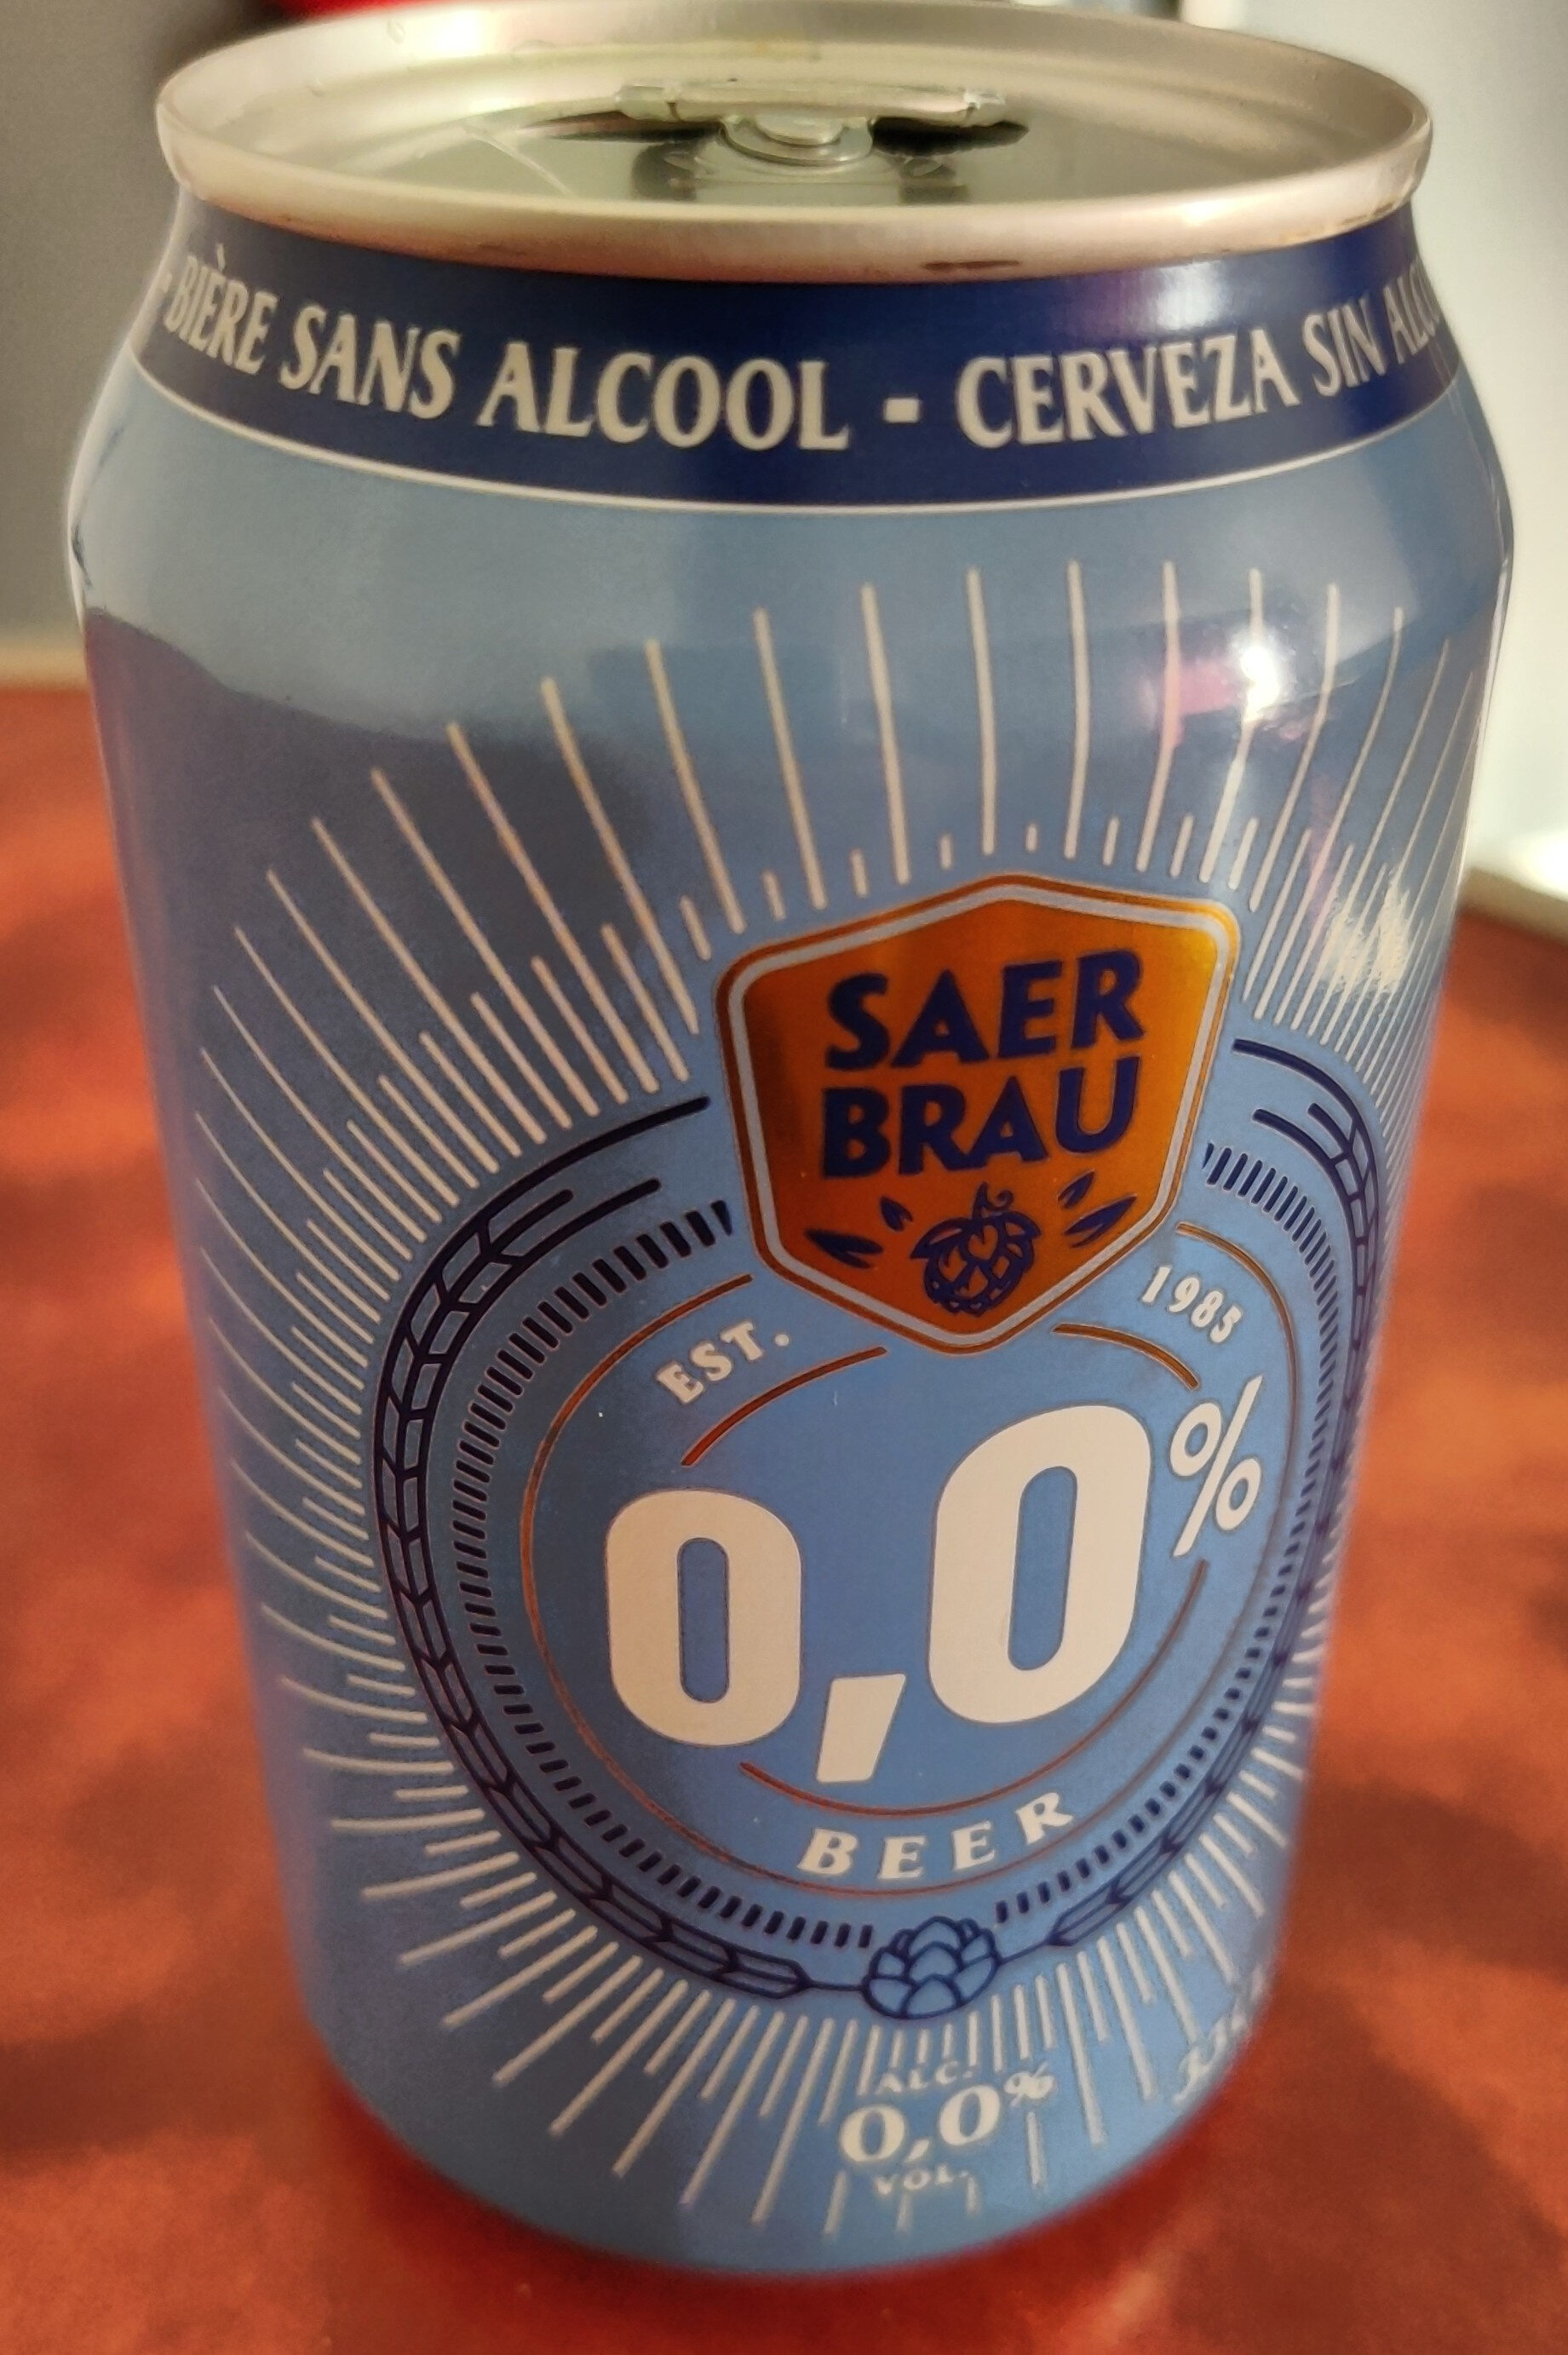 Bière sans alcool - saer brau est. 1985 0,0% beer - Producte - fr